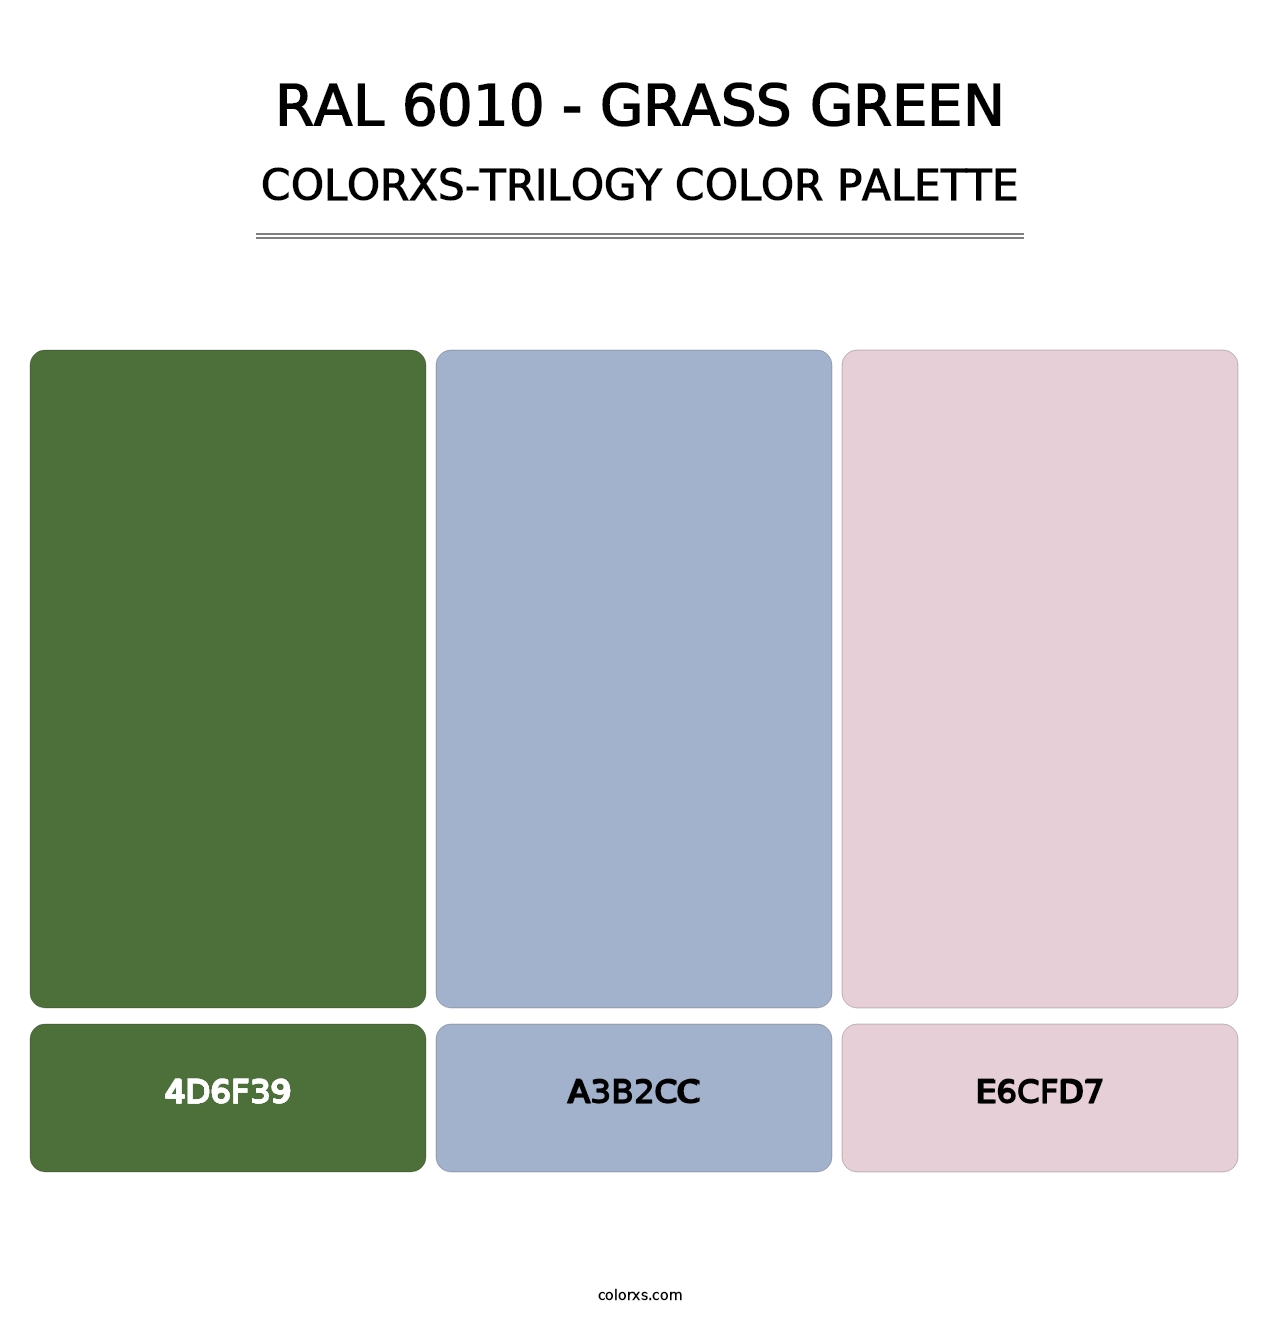 RAL 6010 - Grass Green - Colorxs Trilogy Palette